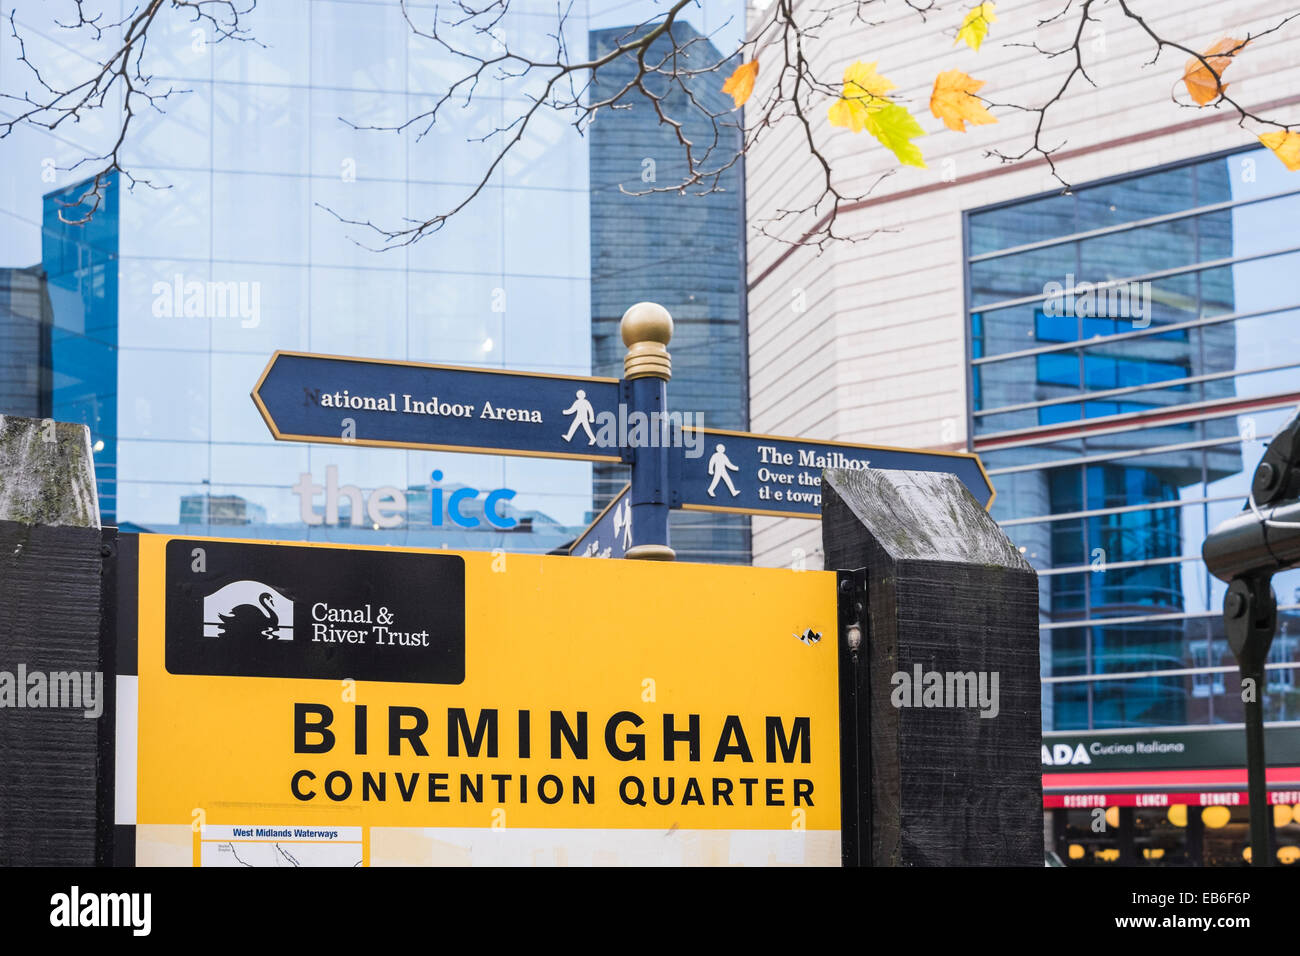 Birmingham Convention Quarter sign Stock Photo